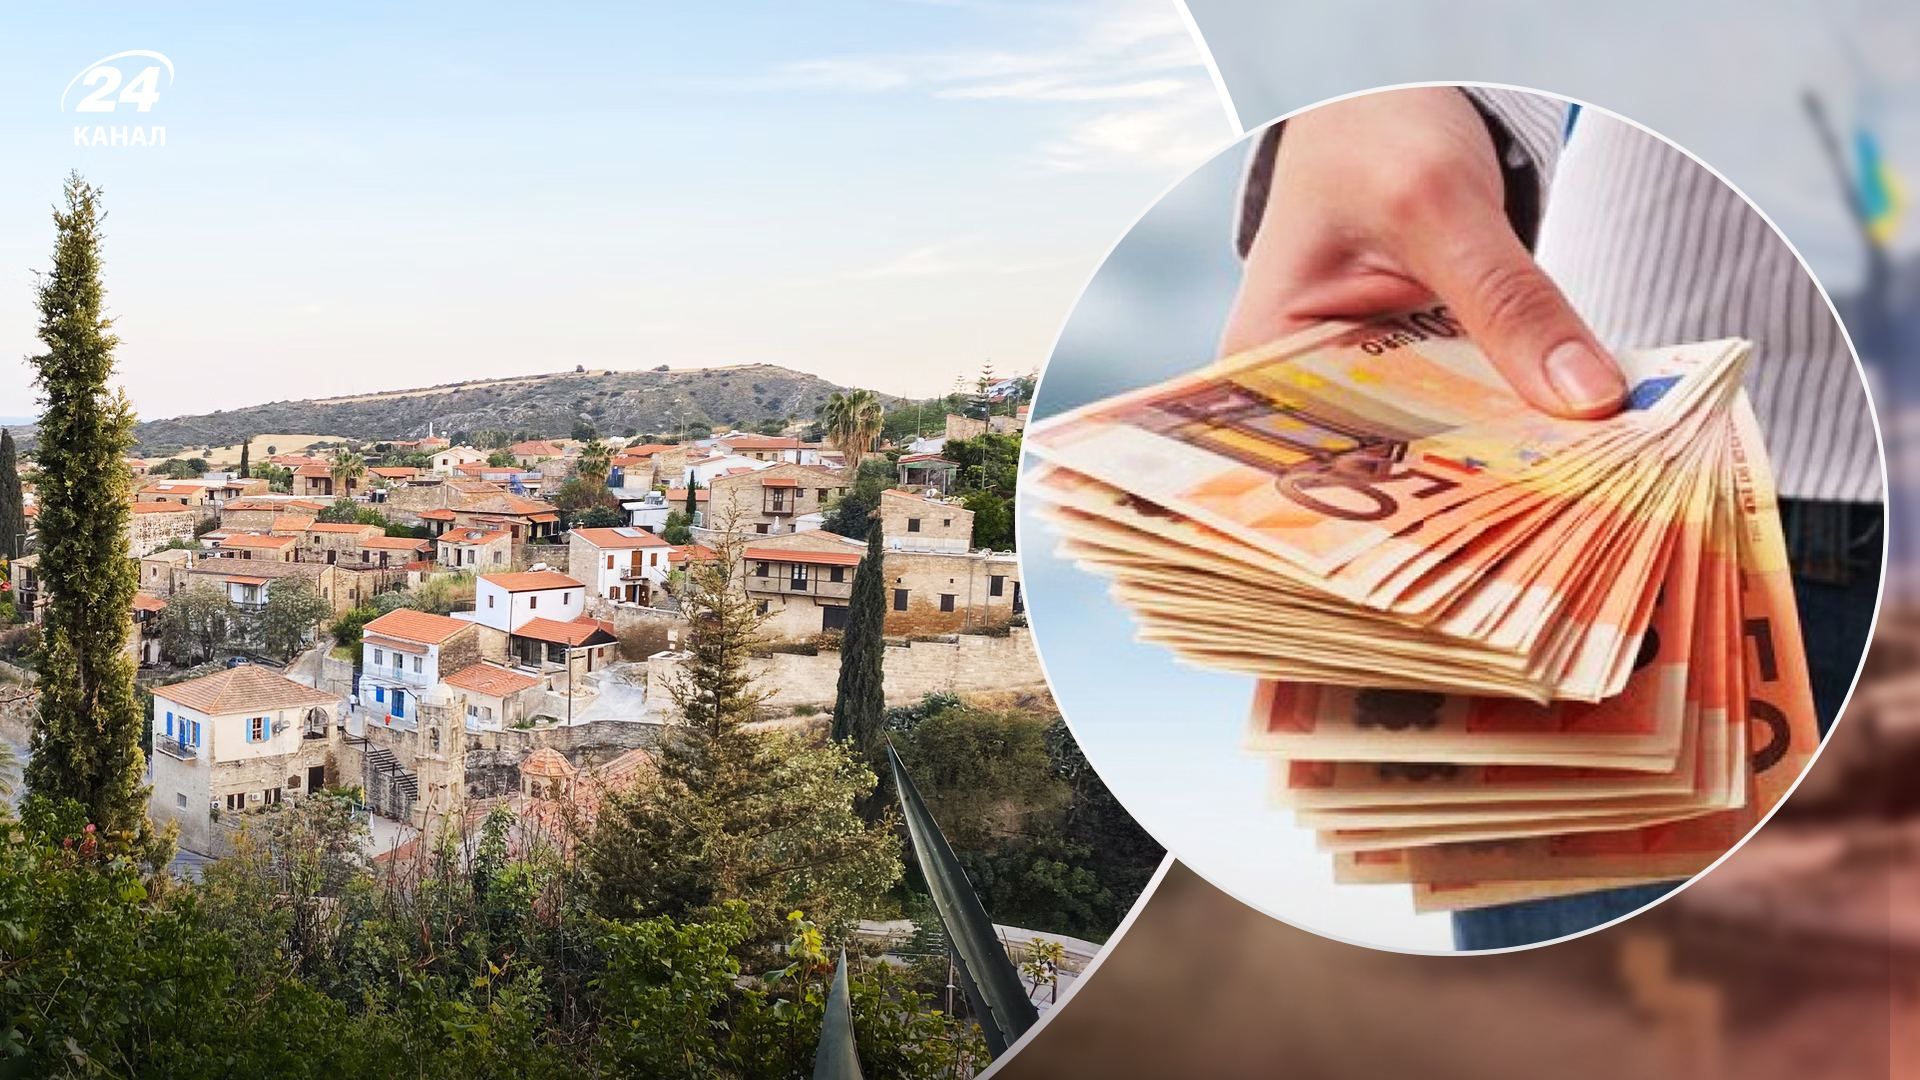 Іноземці масово скуповують нерухомість на Кіпрі  причини ажіотажу - Нерухомість